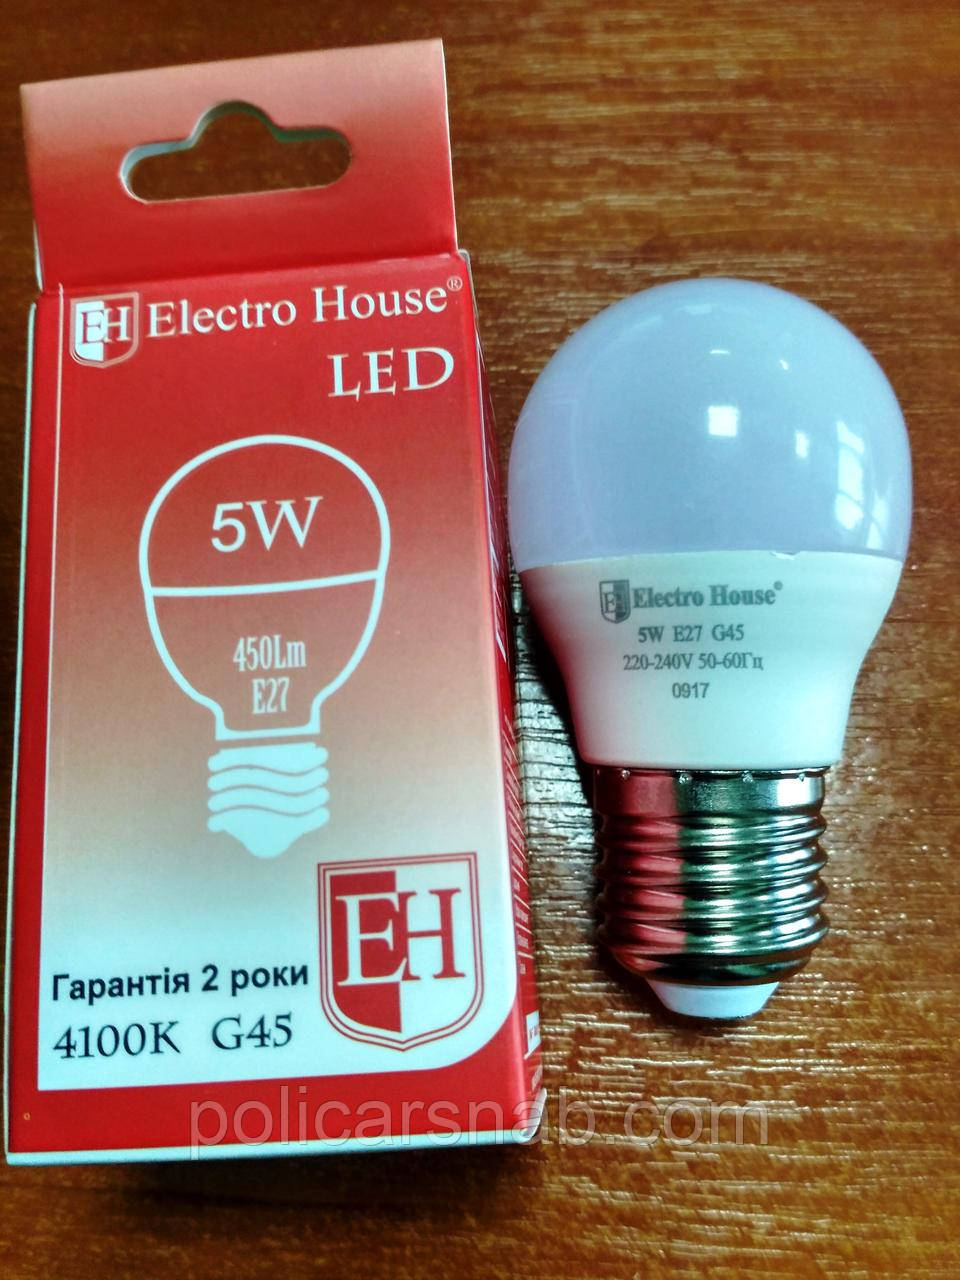 Лампа Electro House світлодіодна 5W 450Lm Е27 куля